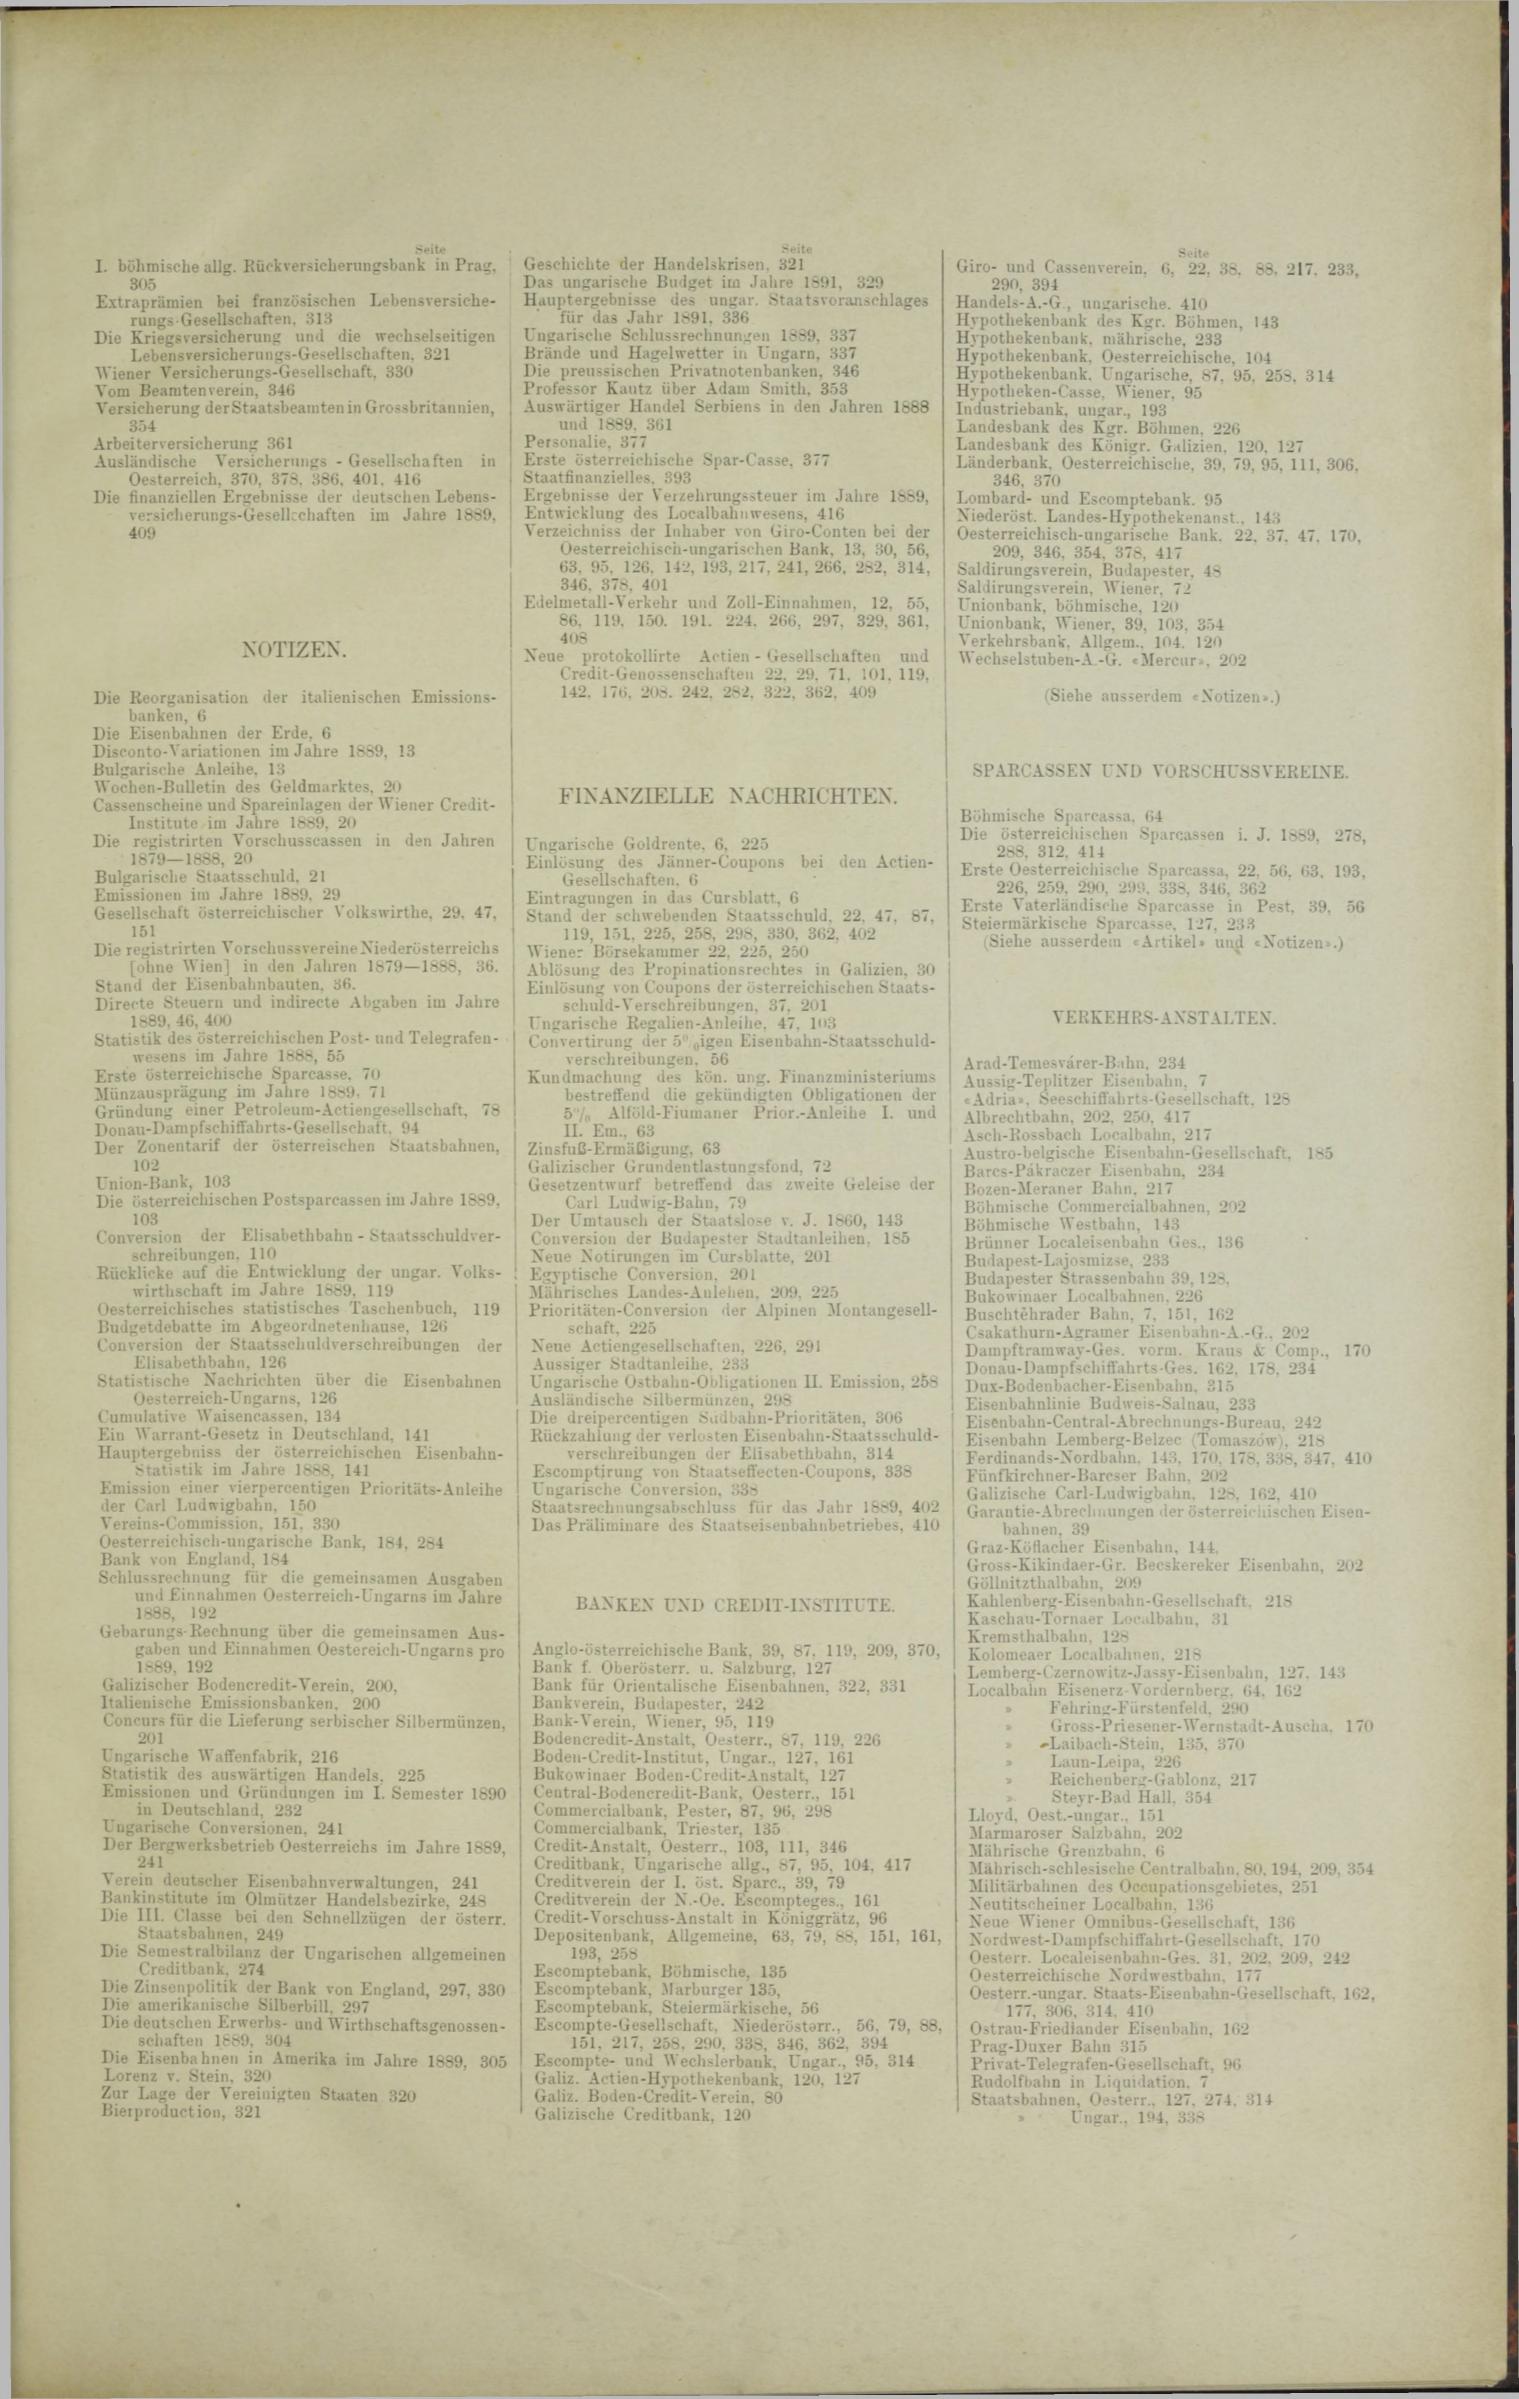 Der Tresor 24.07.1890 - Seite 11